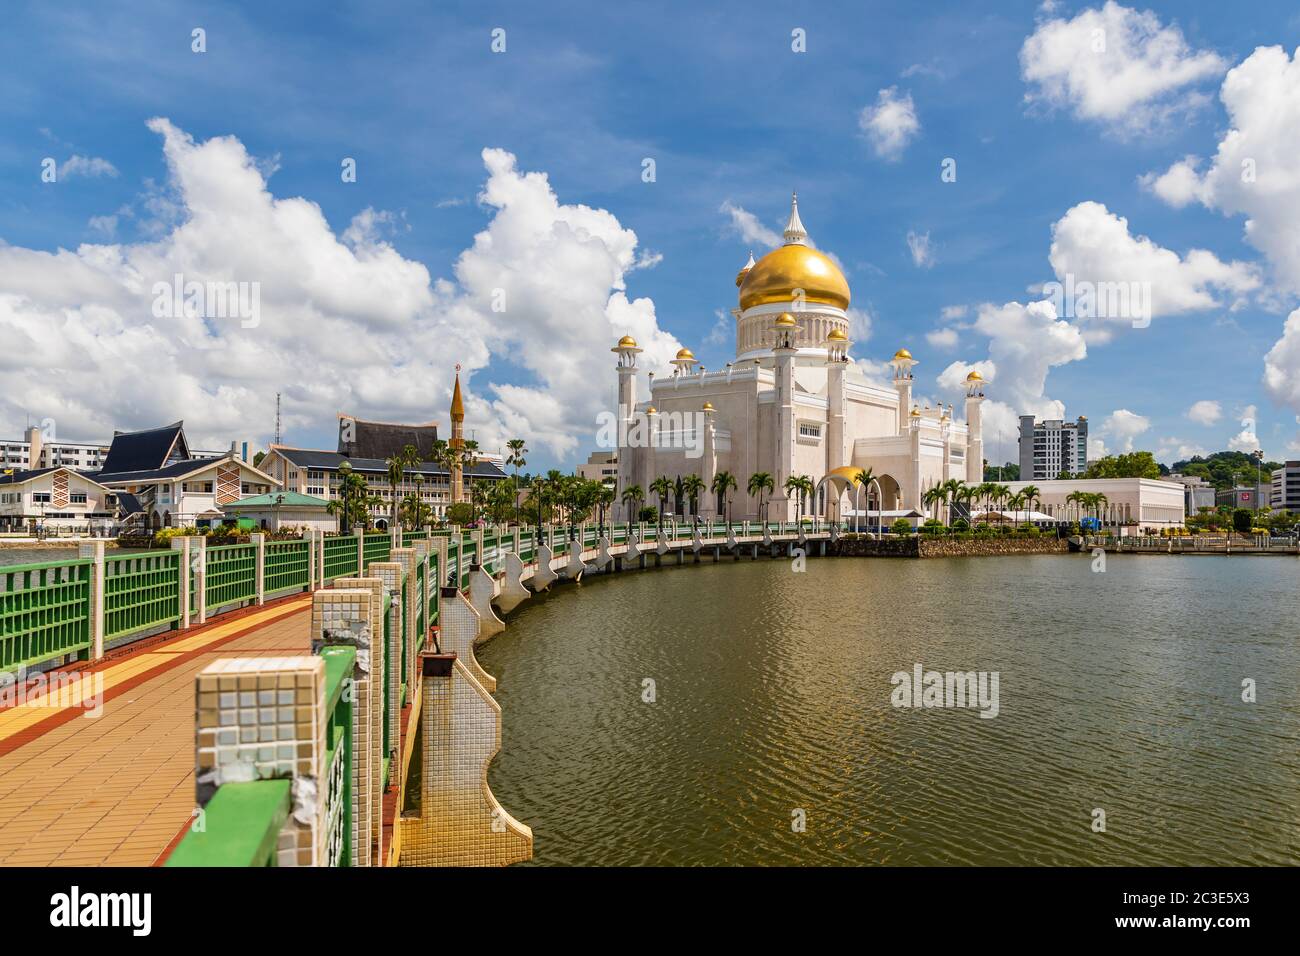 Masjid Omar 'Ali Saifuddien es una mezquita real terminada en 1958. Sirve como símbolo de la fe islámica en Brunei y domina el horizonte de la ciudad Foto de stock